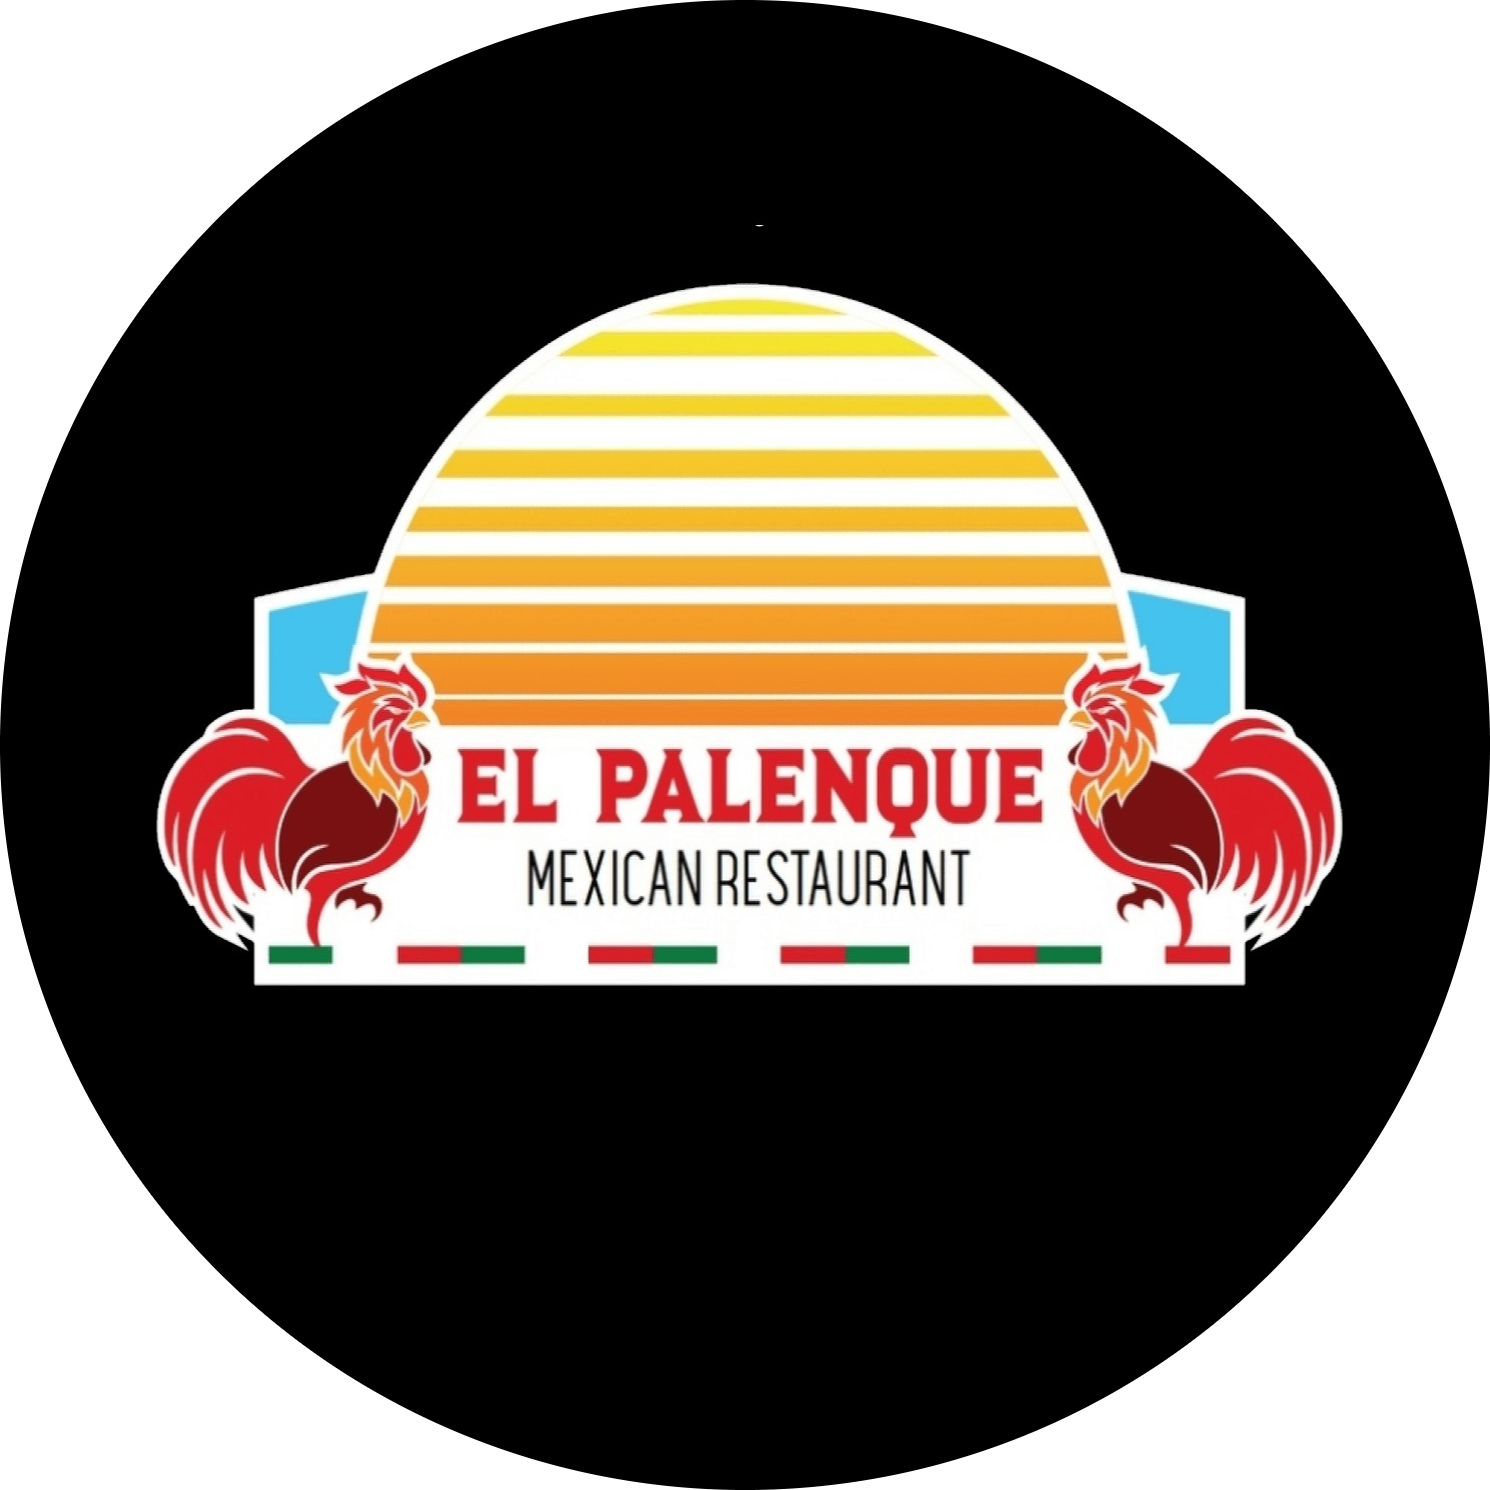 El Palenque Restaurant logo